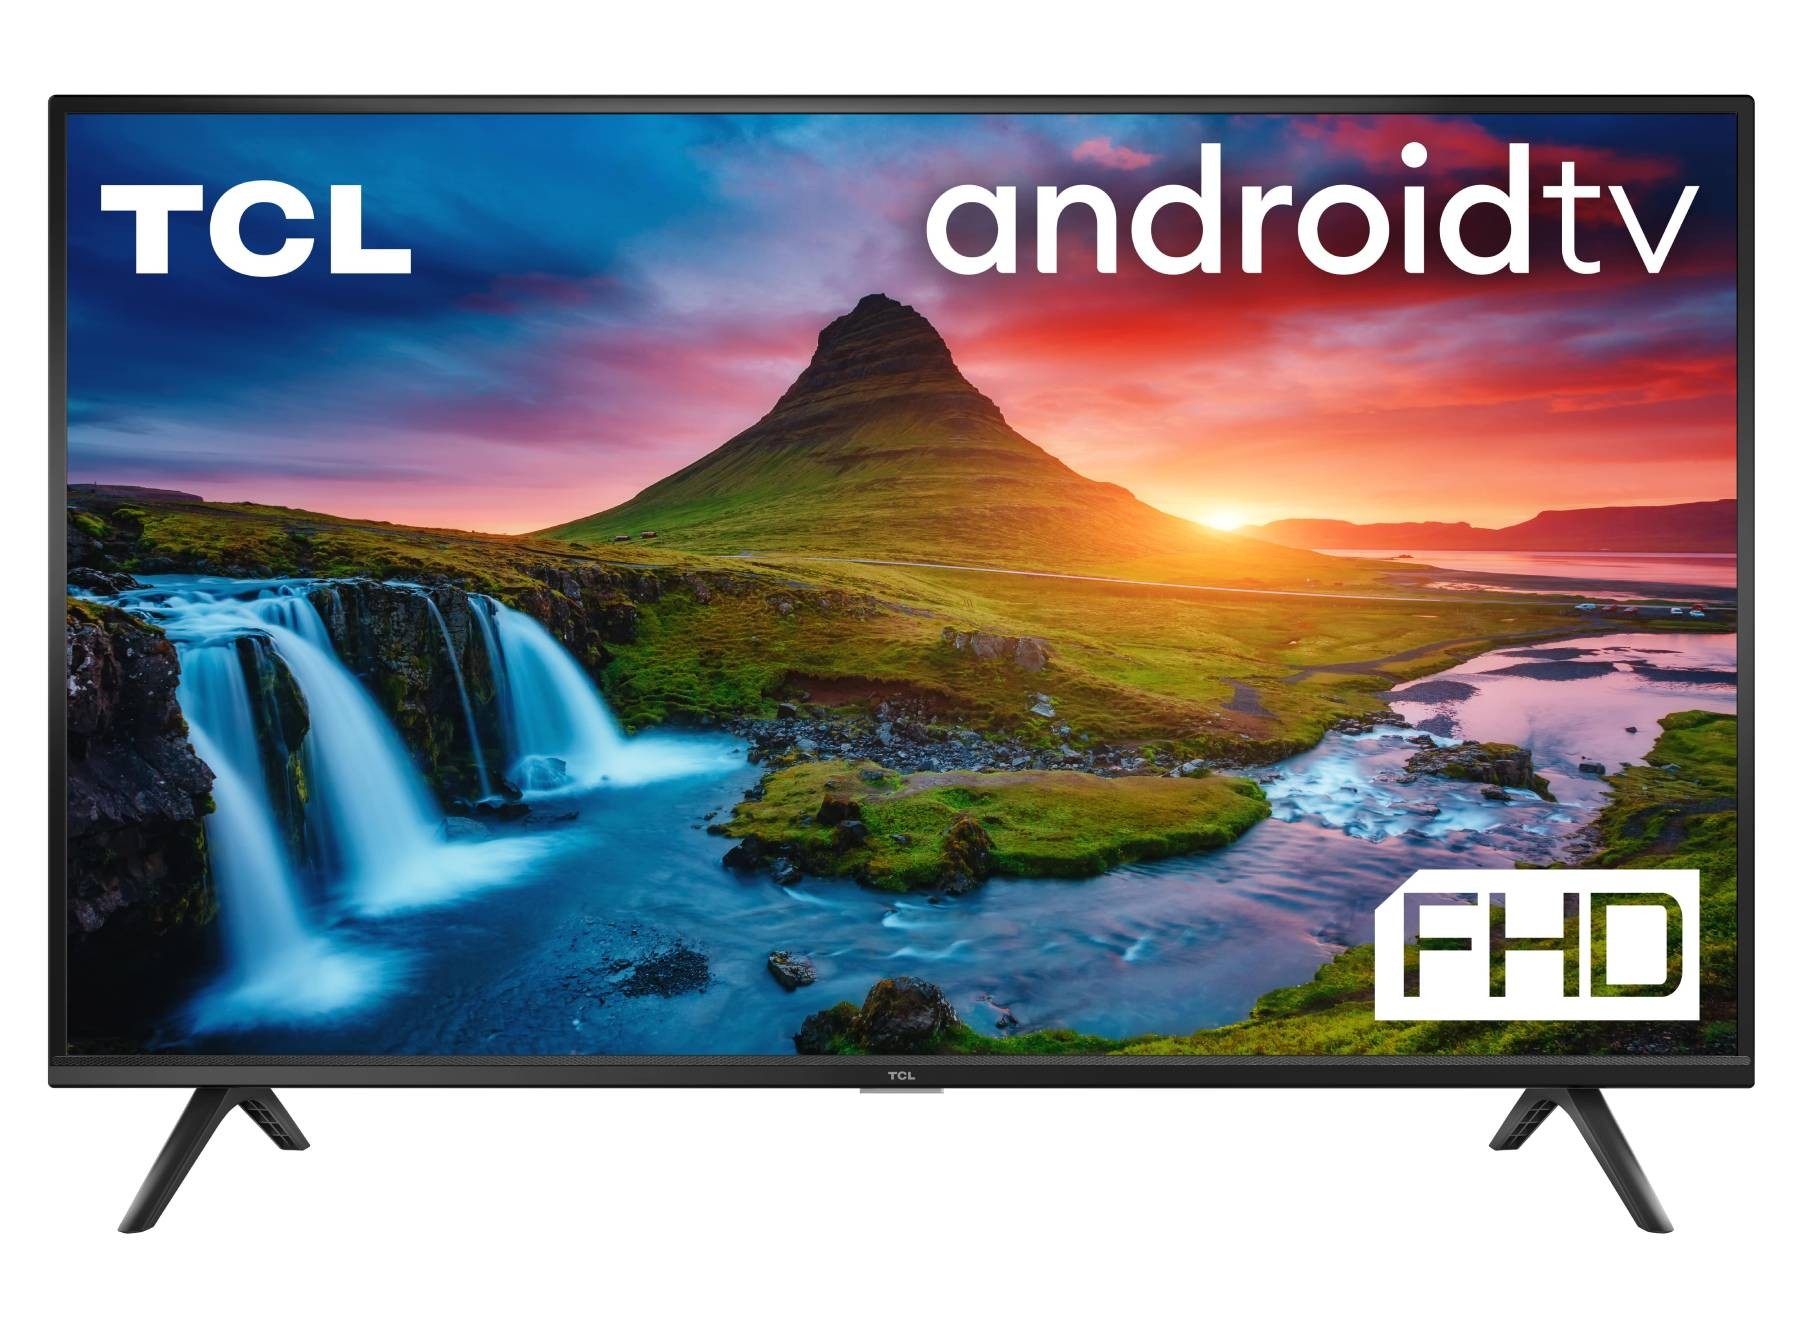 TCL TV LED Full HD 100 cm TV LED 40S5201 Full HD 100 cm